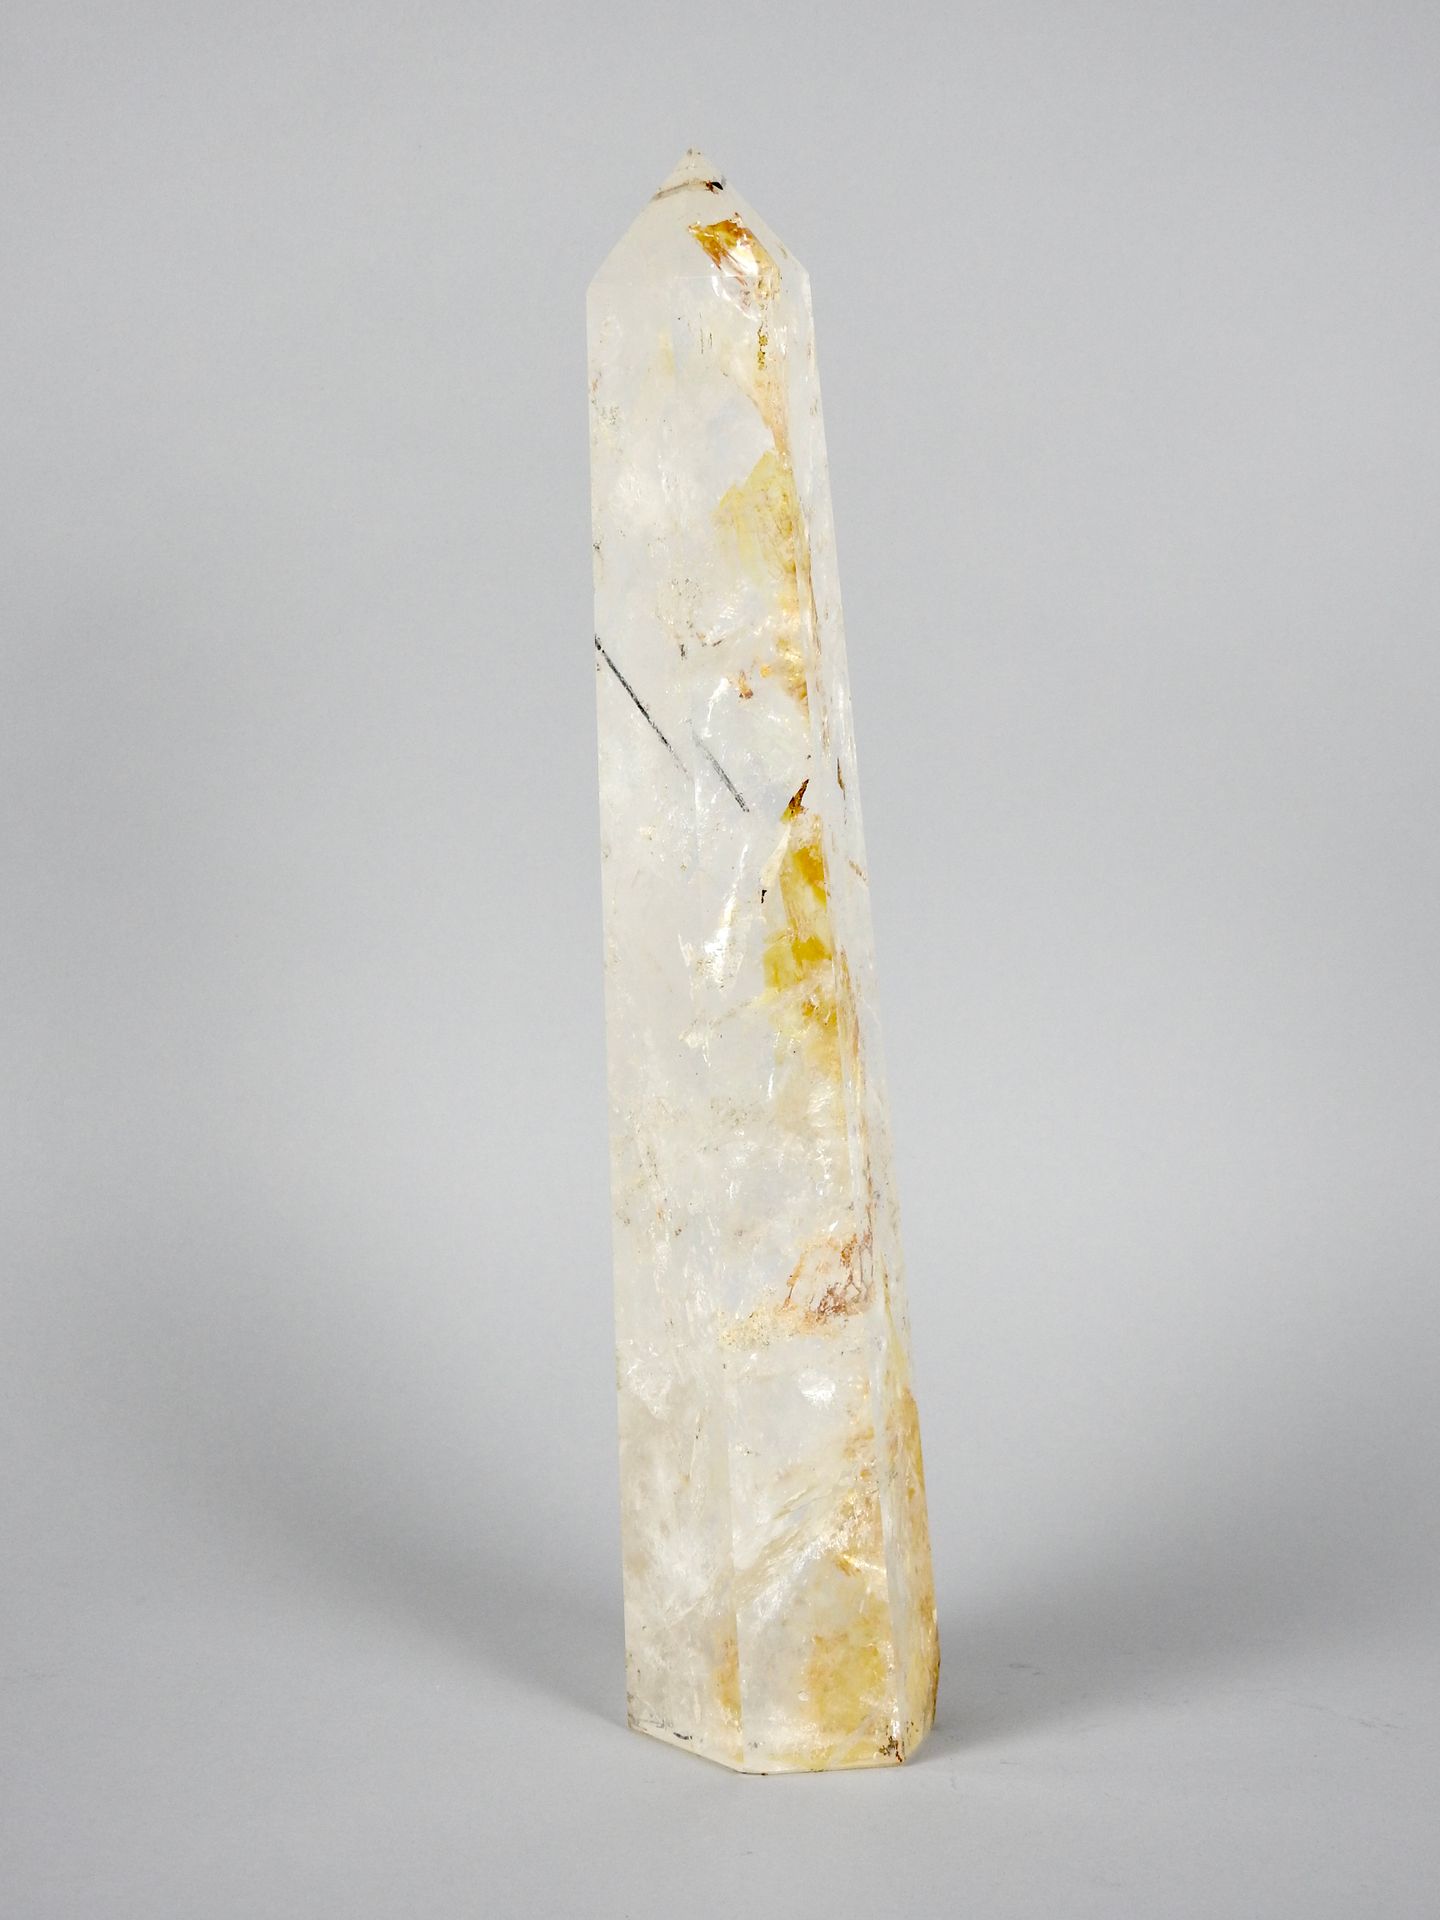 Null Monolito de cuarzo de roca pulido y facetado

H 36 cm